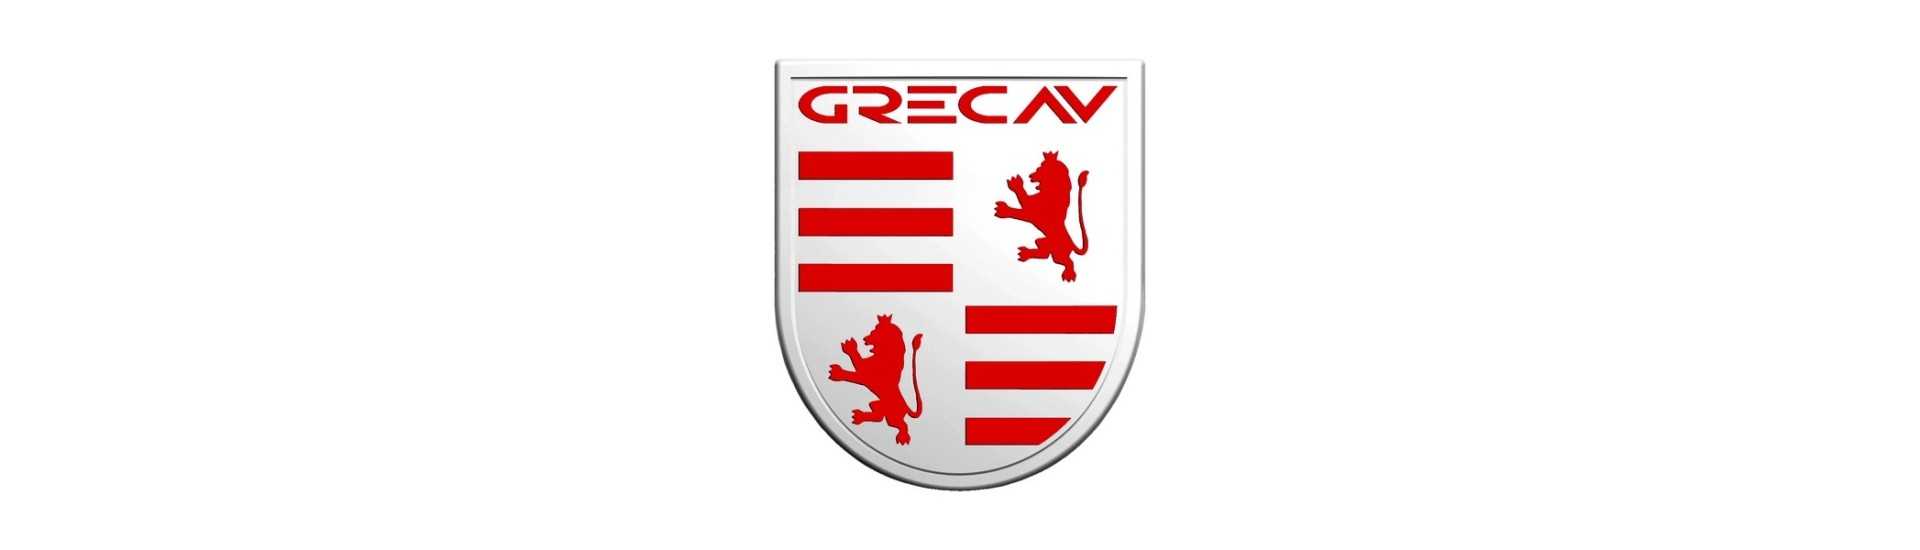 Windschutzscheibenbetrag zum besten Preis für ein Auto ohne Führerschein Grecav